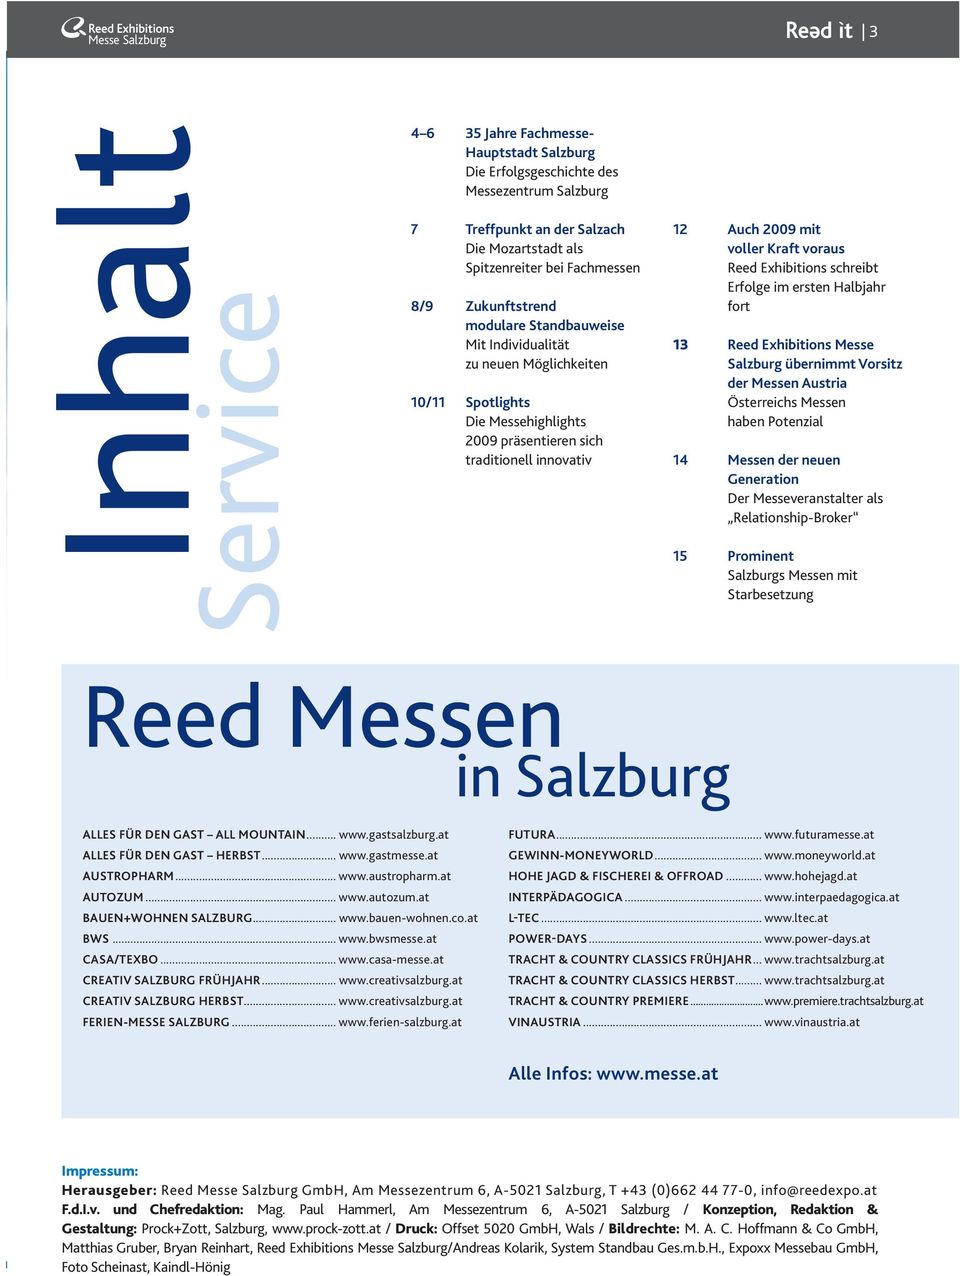 Reed Exhibitions schreibt Erfolge im ersten Halbjahr fort 13 Reed Exhibitions Messe Salzburg übernimmt Vorsitz der Messen Austria Österreichs Messen haben Potenzial 14 Messen der neuen Generation Der